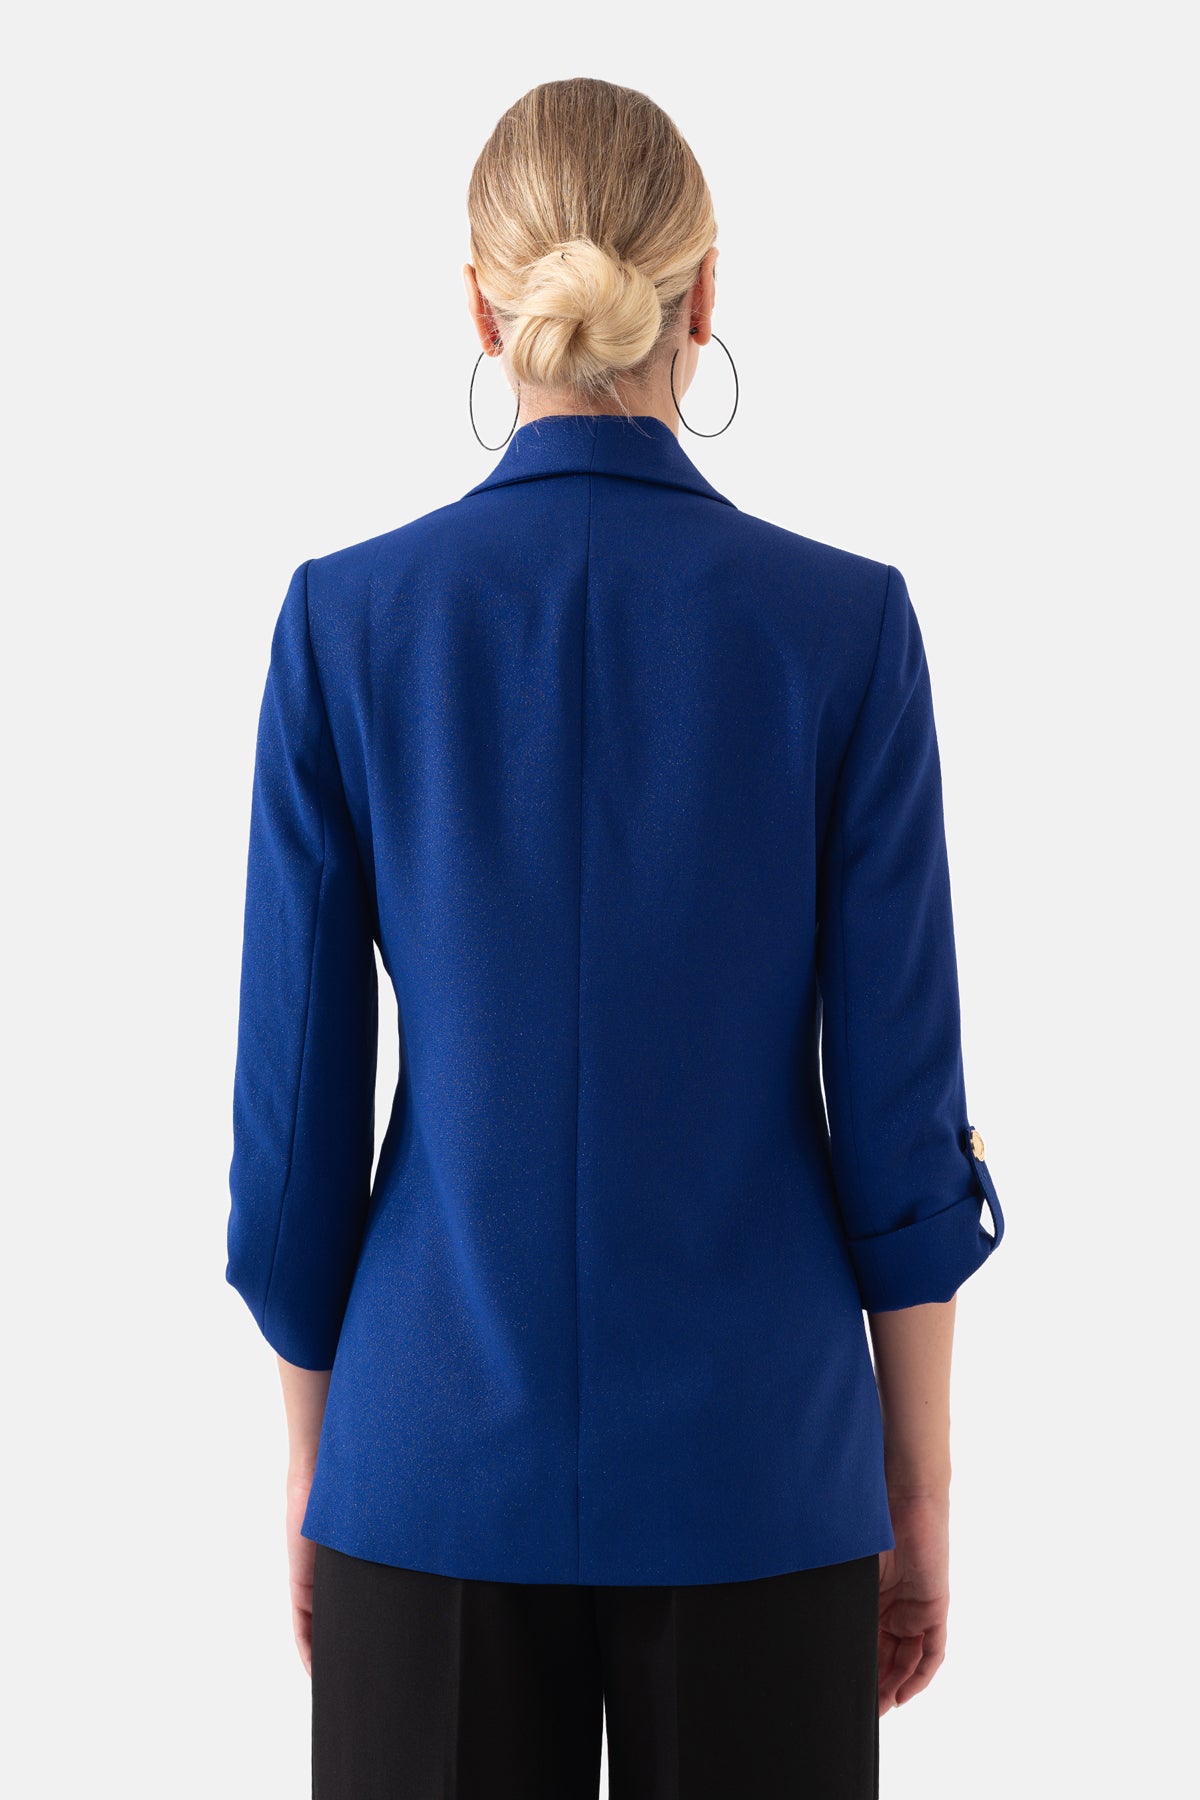 Saks Mavi Şal Yakalı Kruvaze Blazer Kadın Ceket